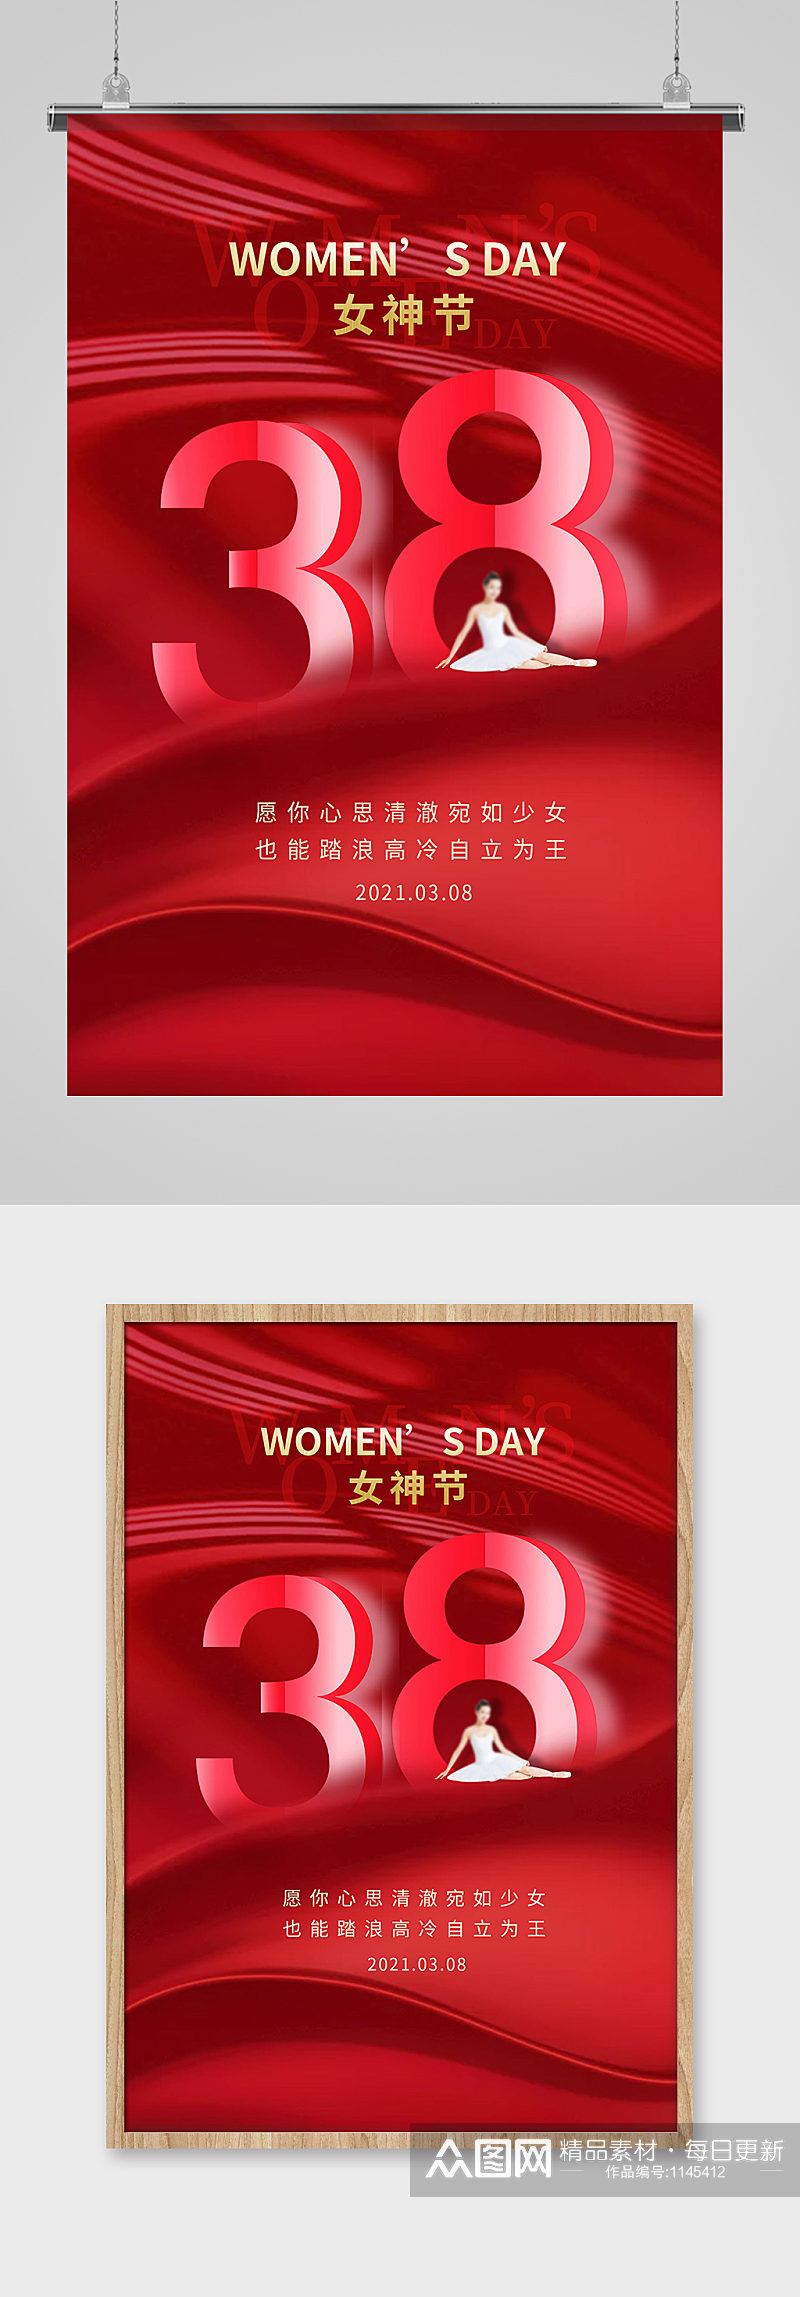 38妇女节女神节快乐海报素材